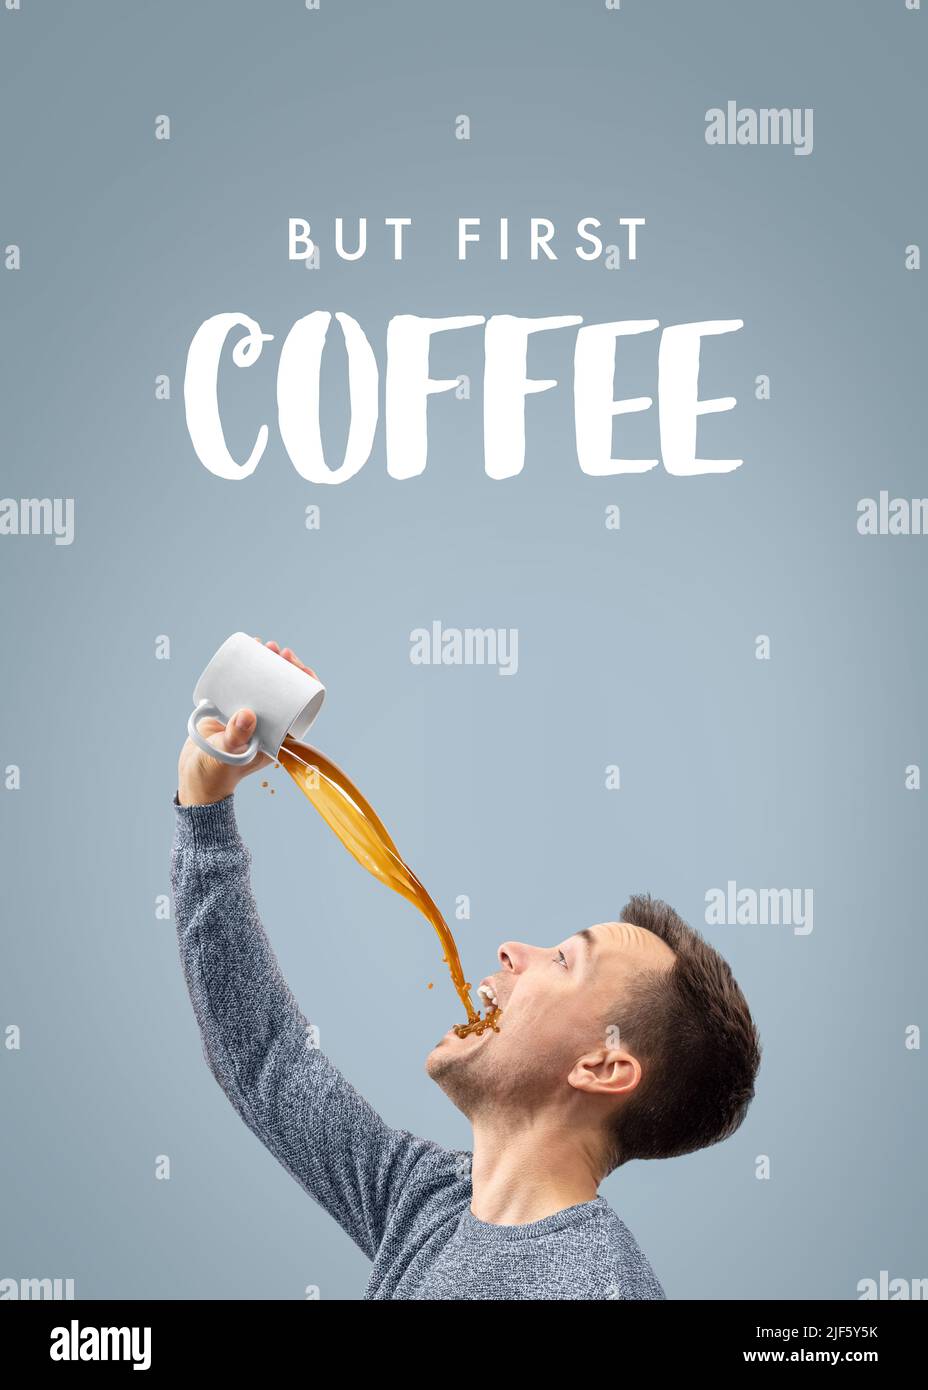 Aber zuerst Kaffee - Mann, der viel Kaffee trinkt Stockfoto